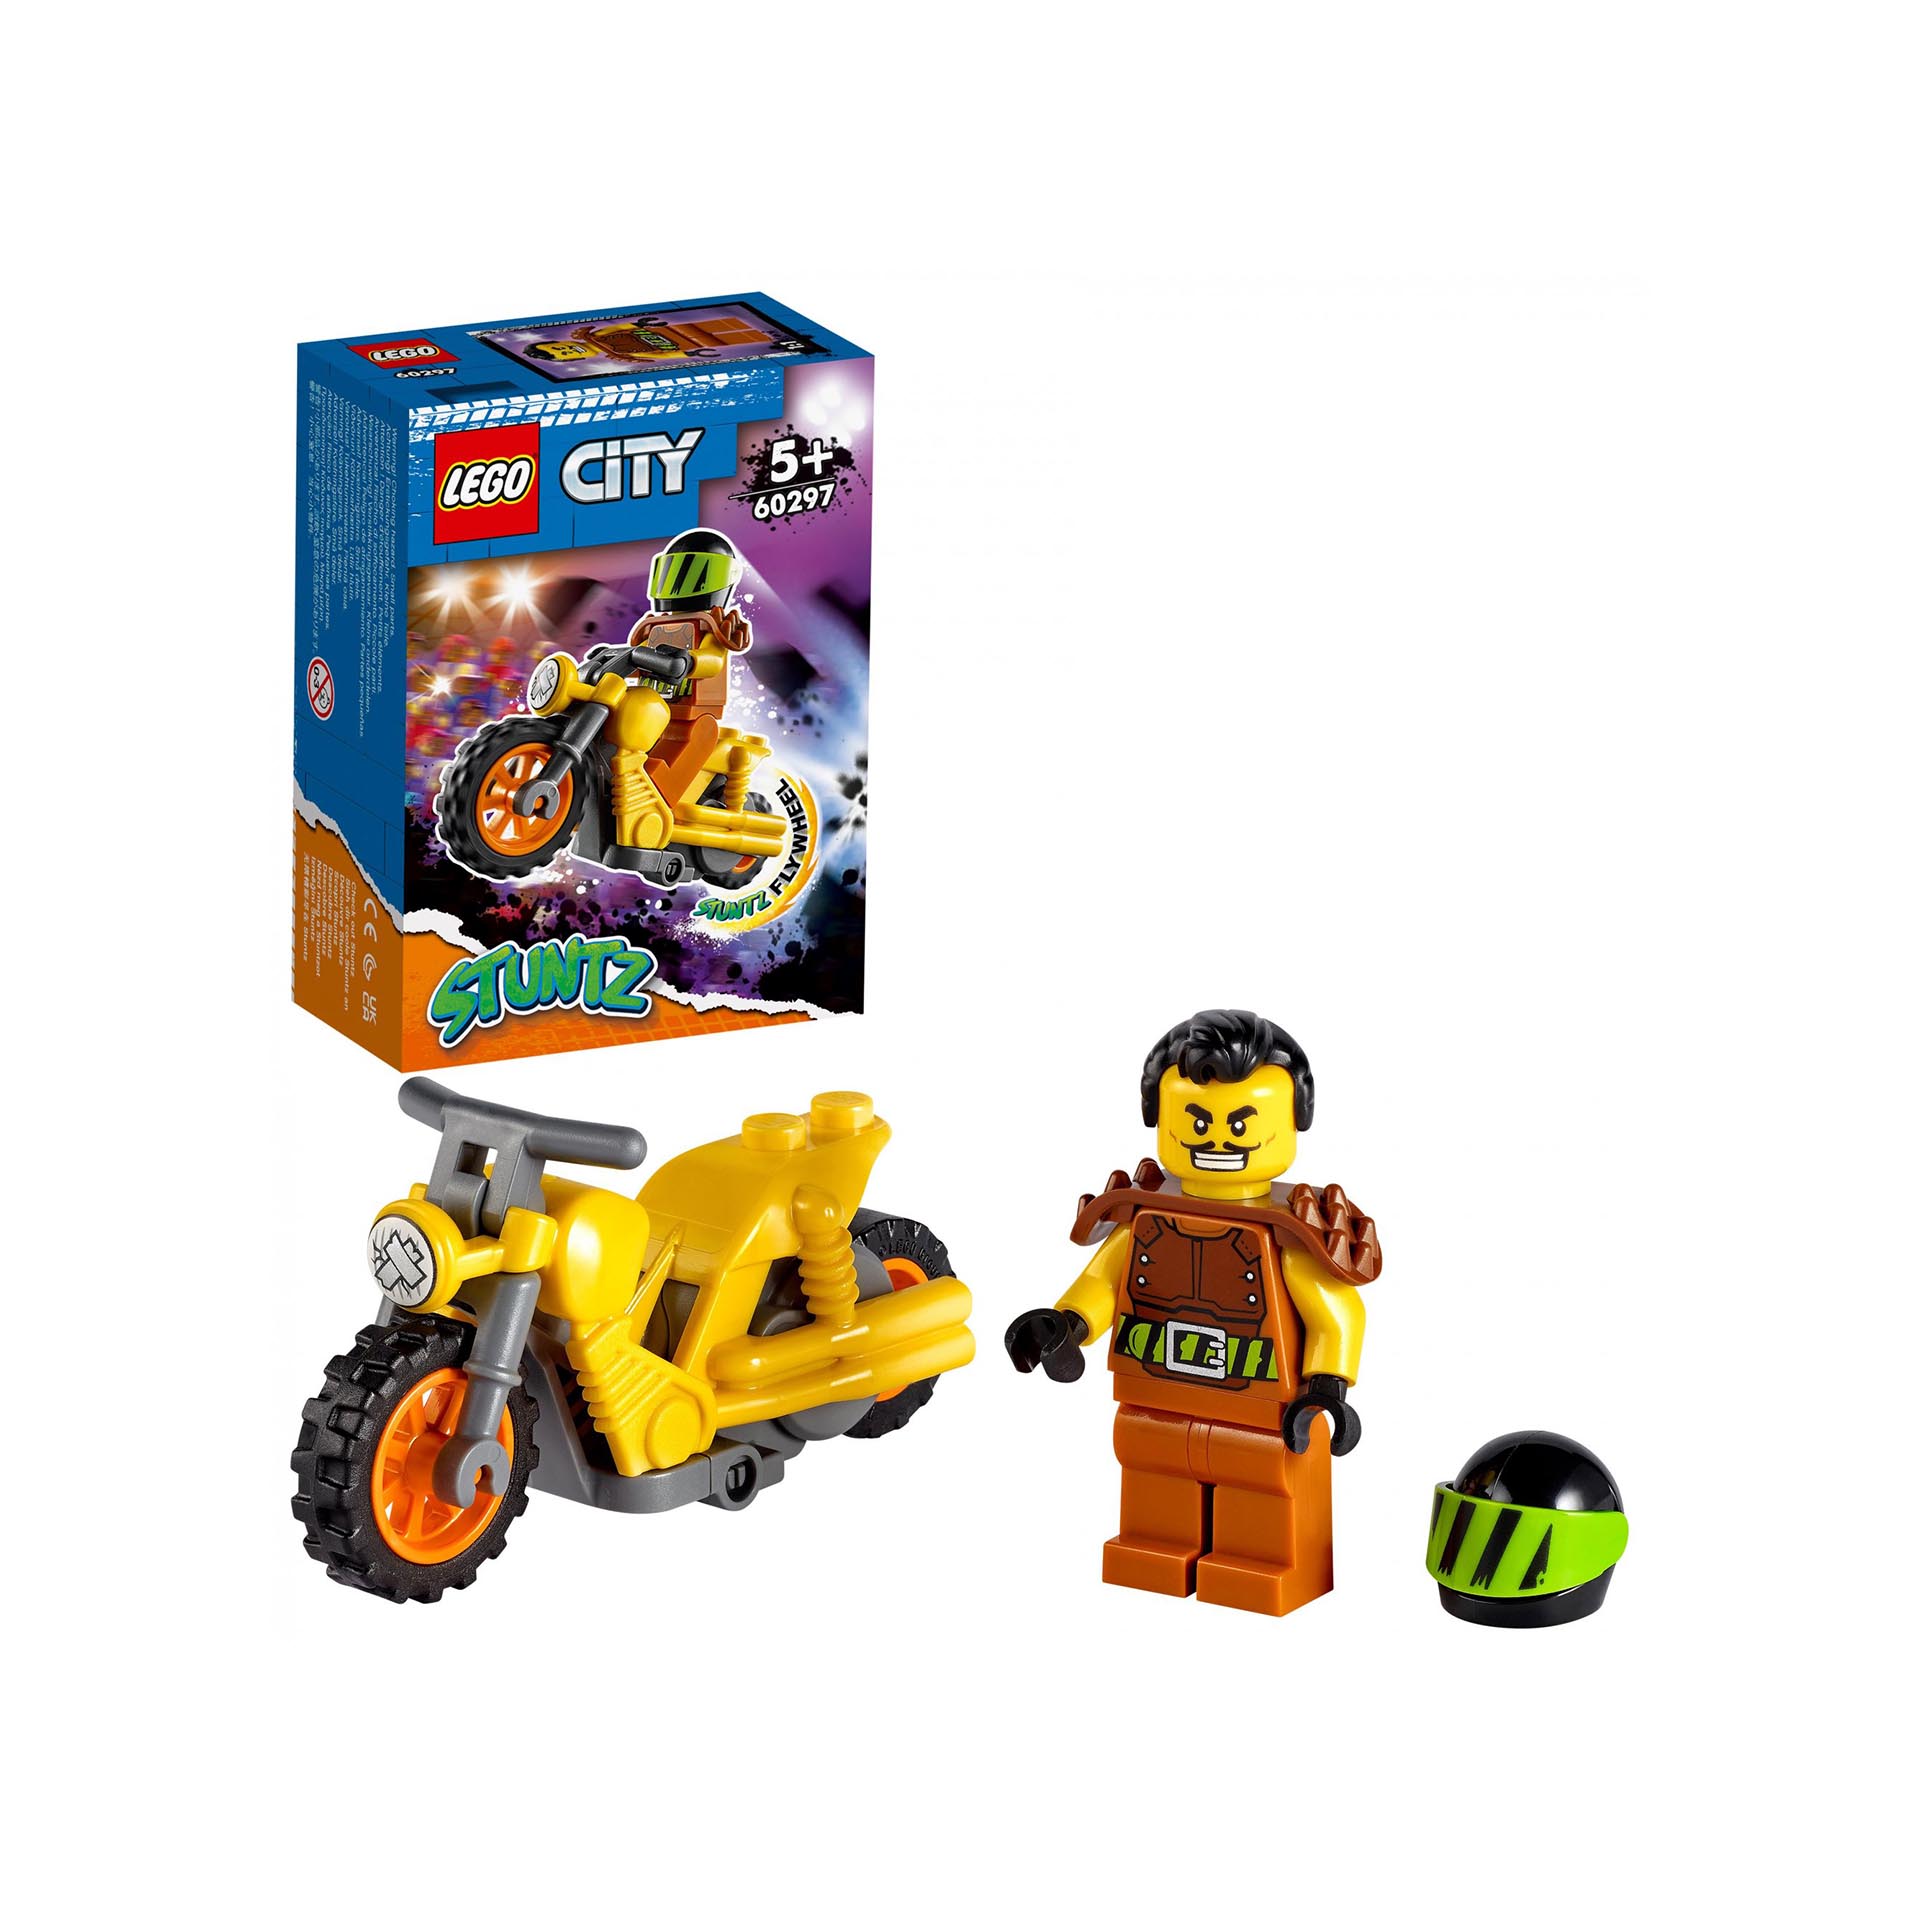 LEGO City Stuntz Stunt Bike da Demolizione con Moto Giocattolo con Meccanismo a 60297, , large